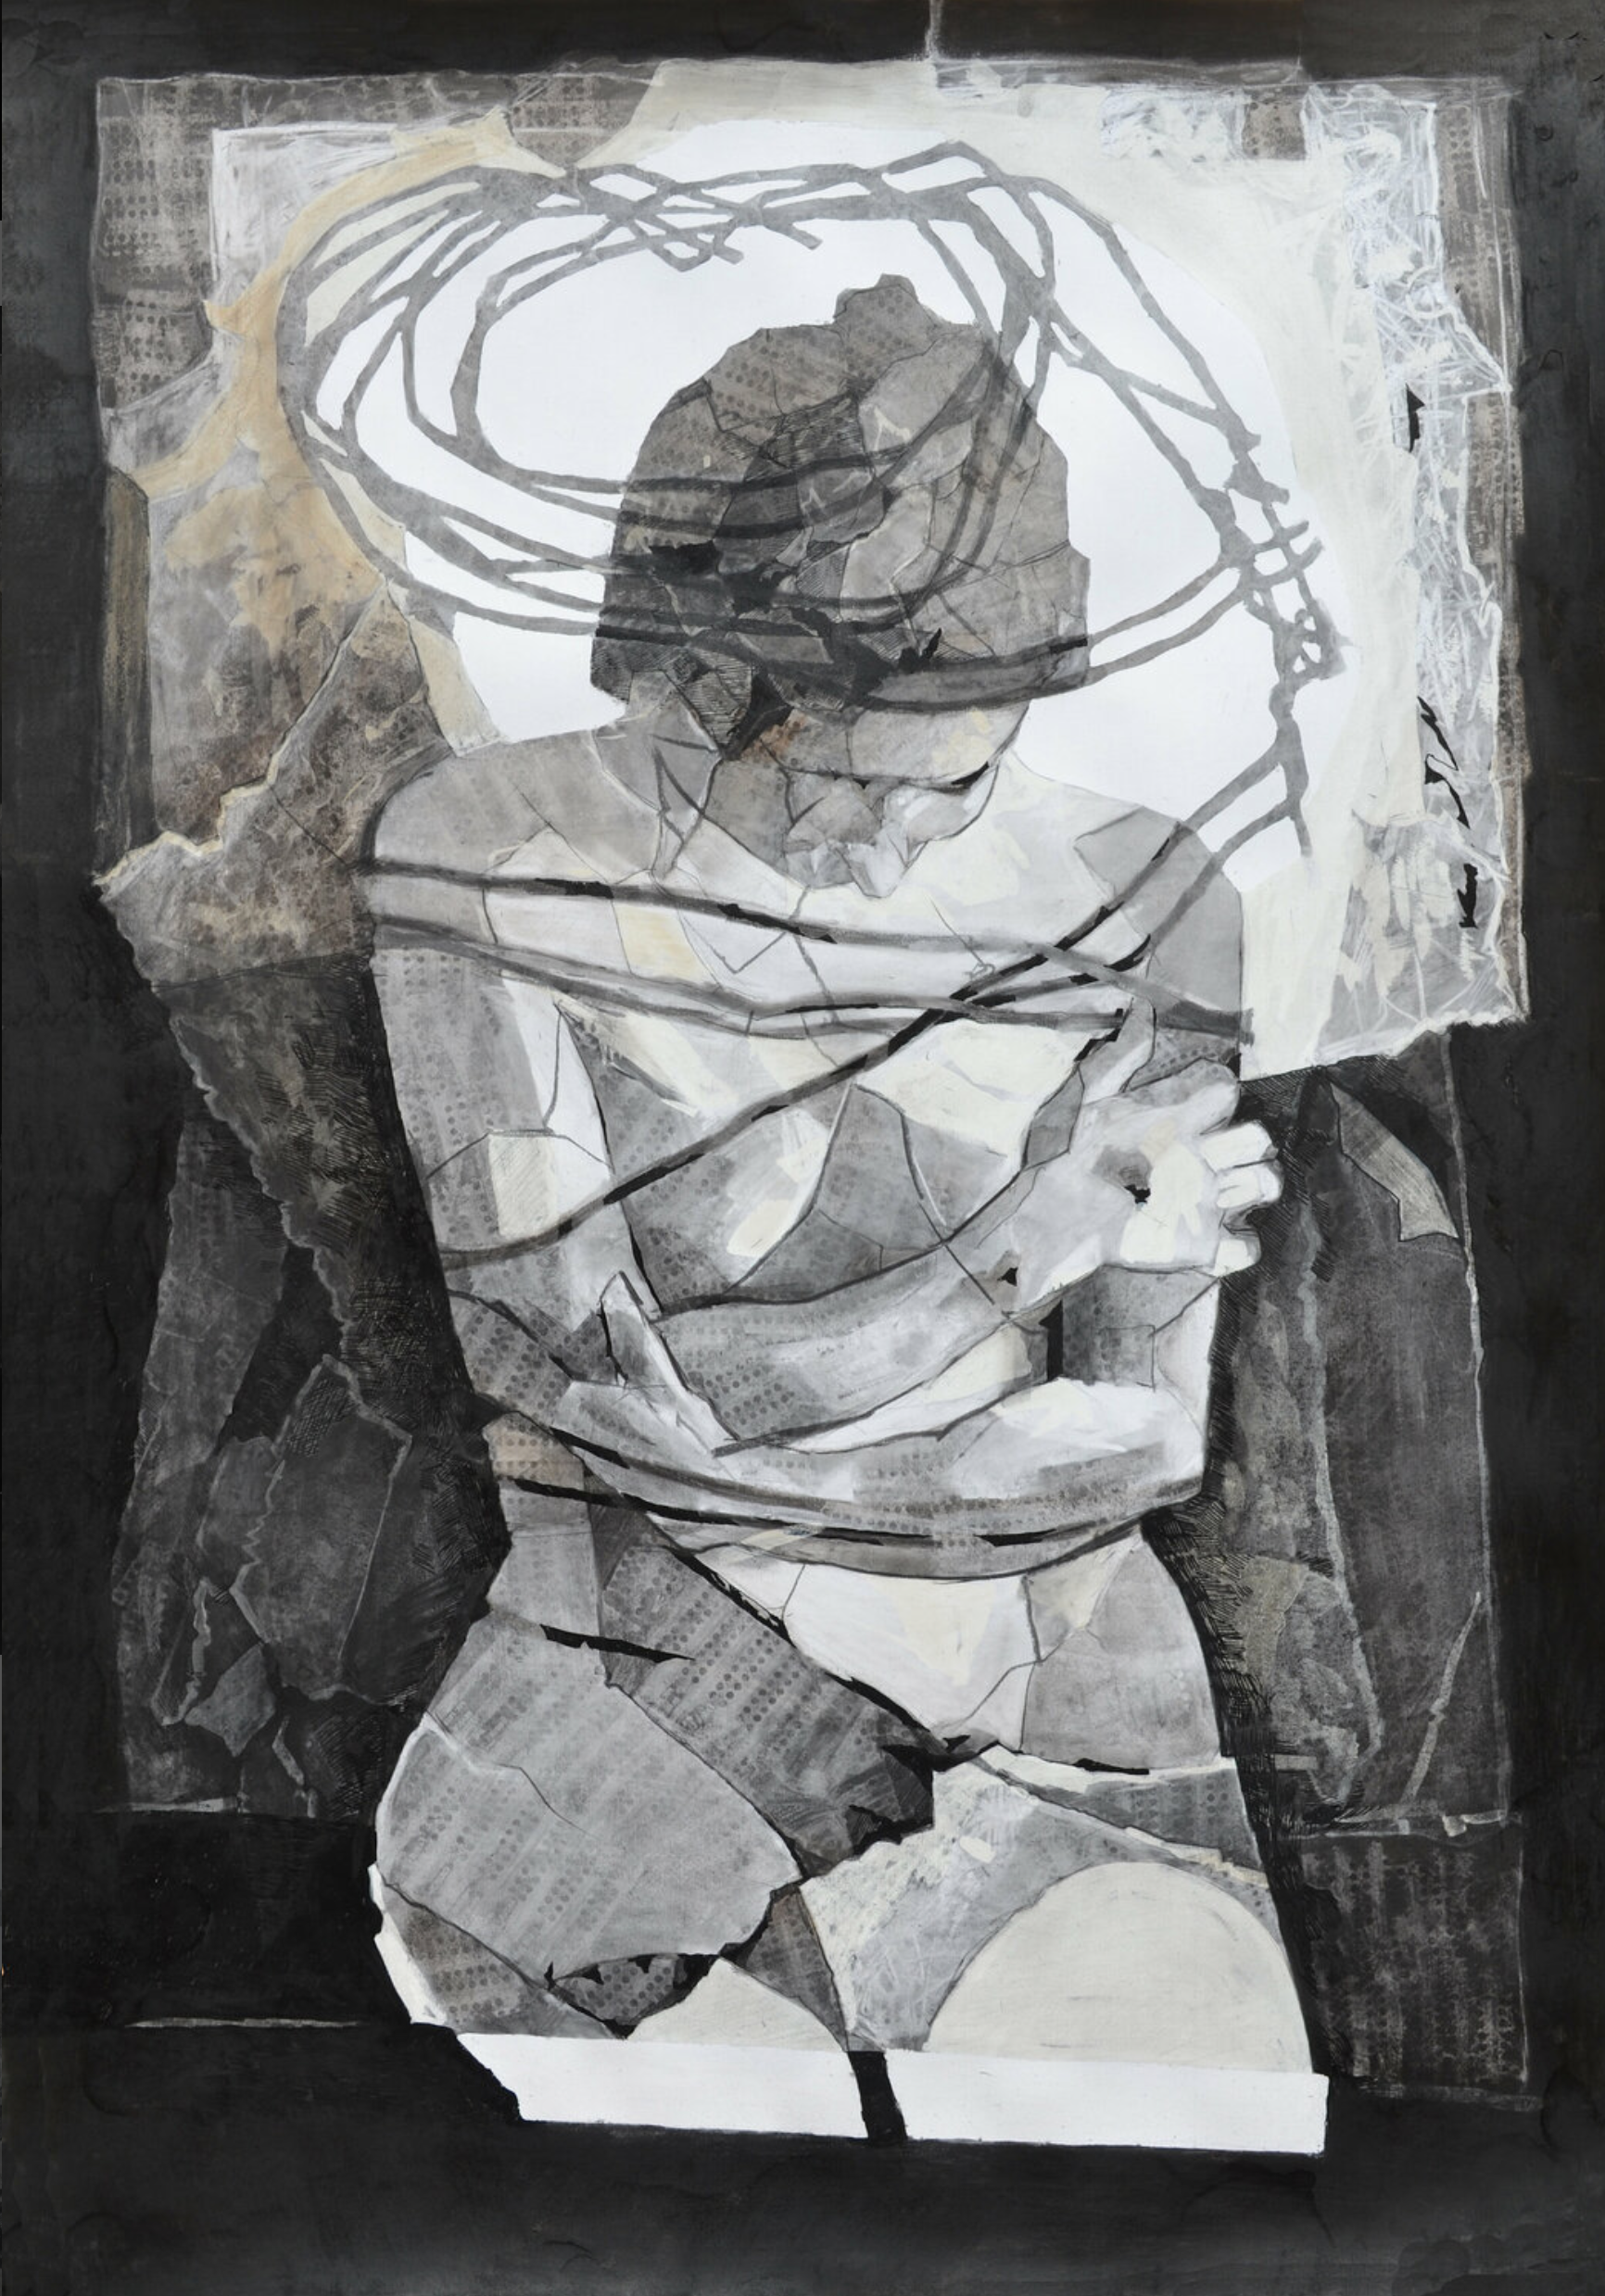 Melinda Matyas ist eine ungarische Malerin mit Sitz in London. Ihr  Figuratives expressionistischer Frauenakt "Nimbus" ist erstellt mit Tinte und Kohle auf Fabriano-Baumwollpapier